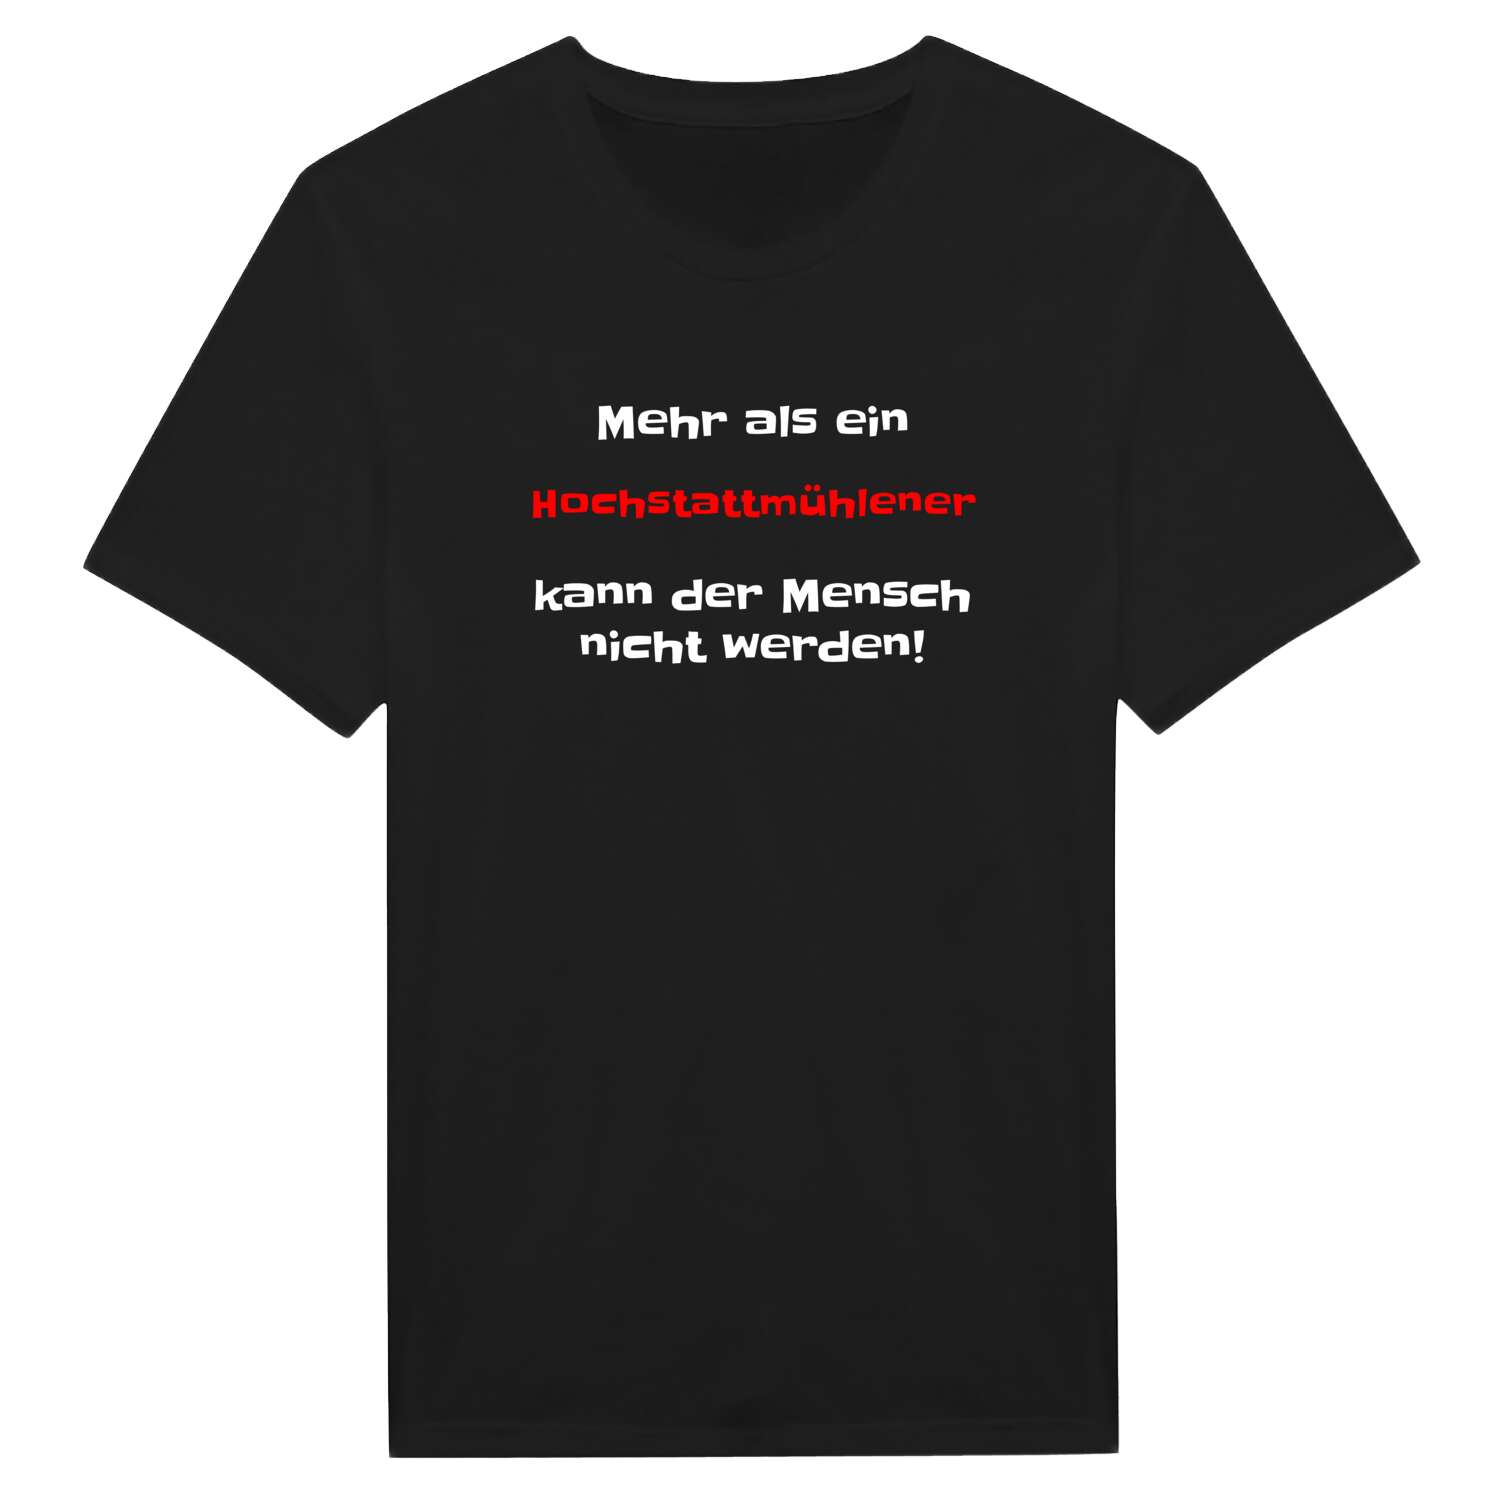 Hochstattmühle T-Shirt »Mehr als ein«